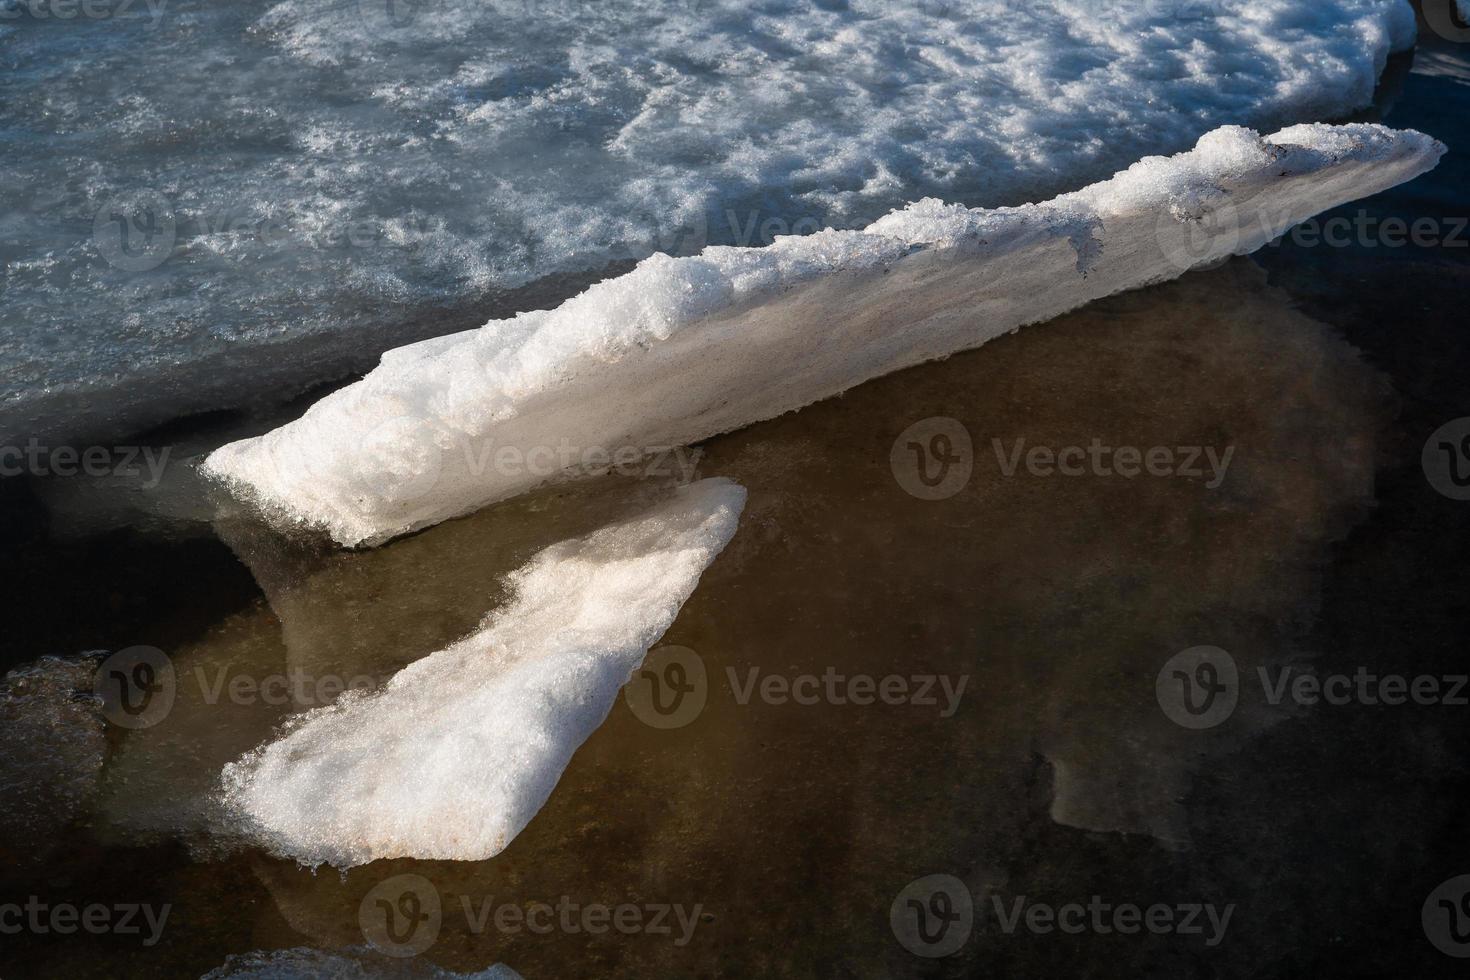 baltico mare costa nel inverno con ghiaccio a tramonto foto